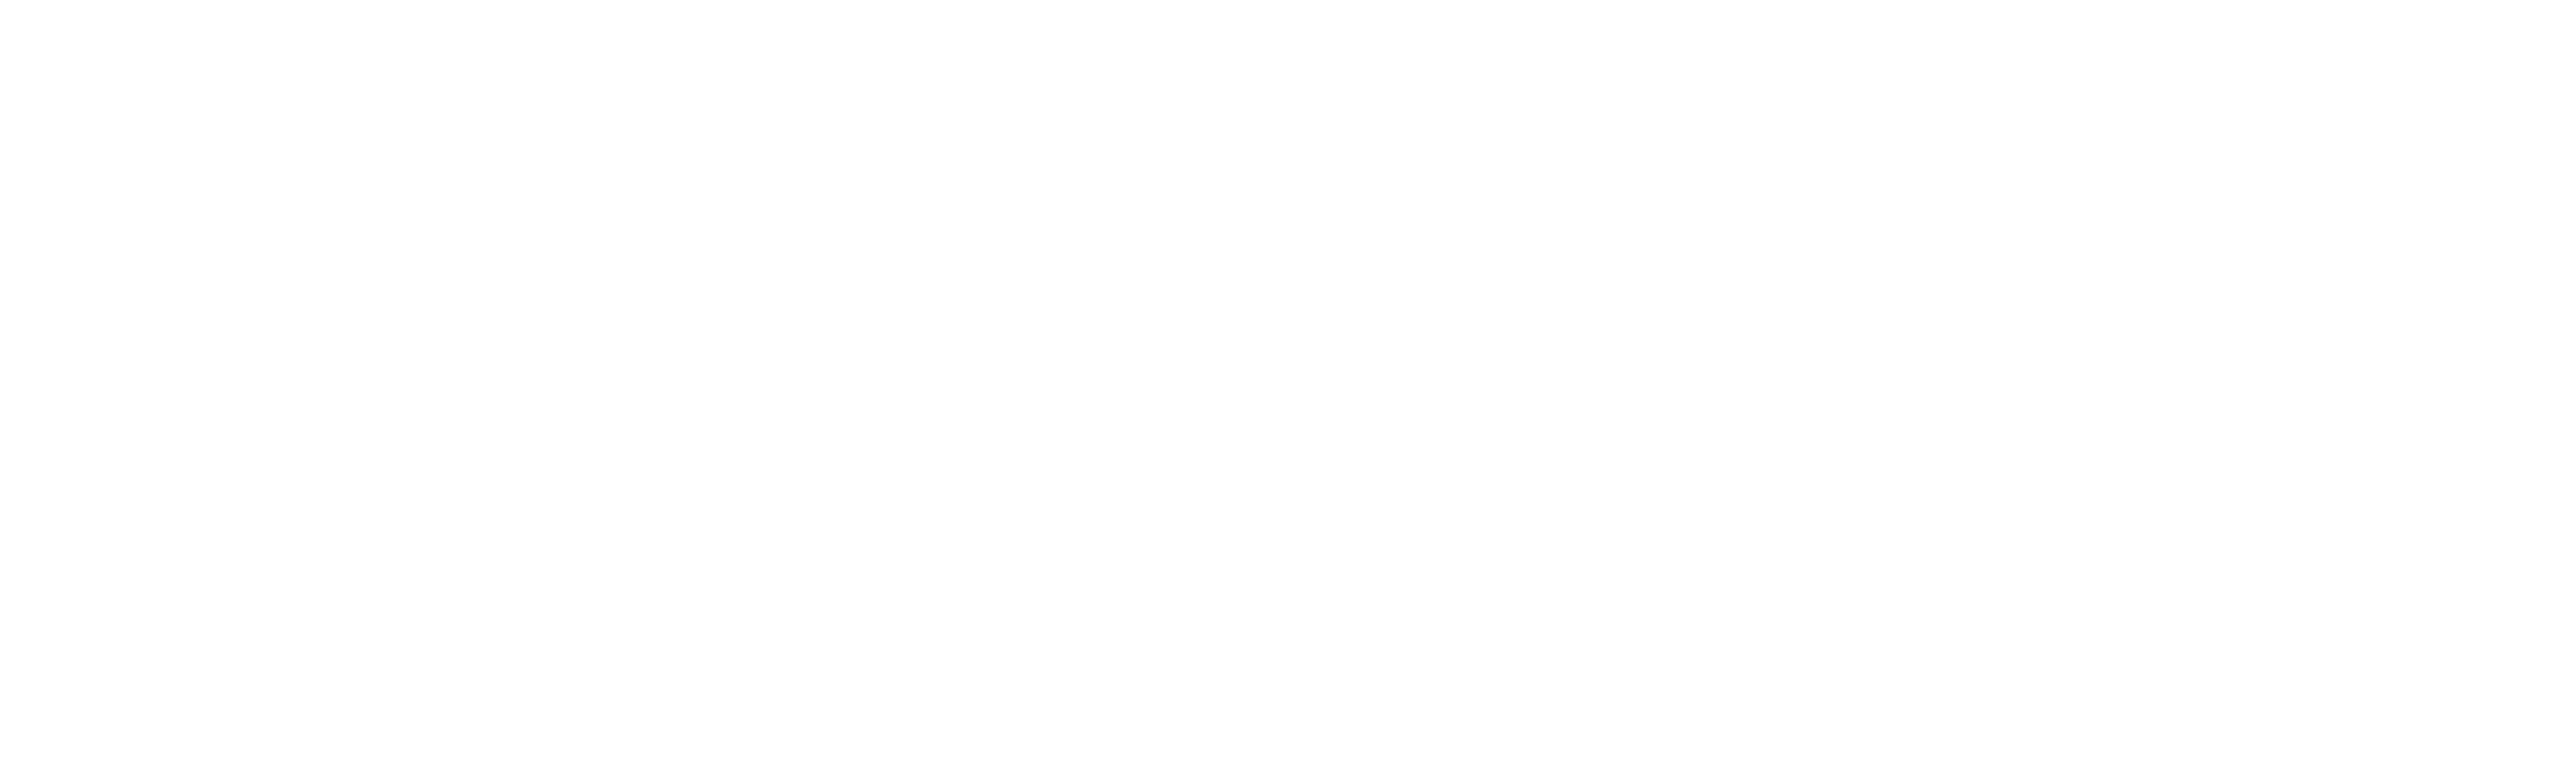 majorkey-logo-white